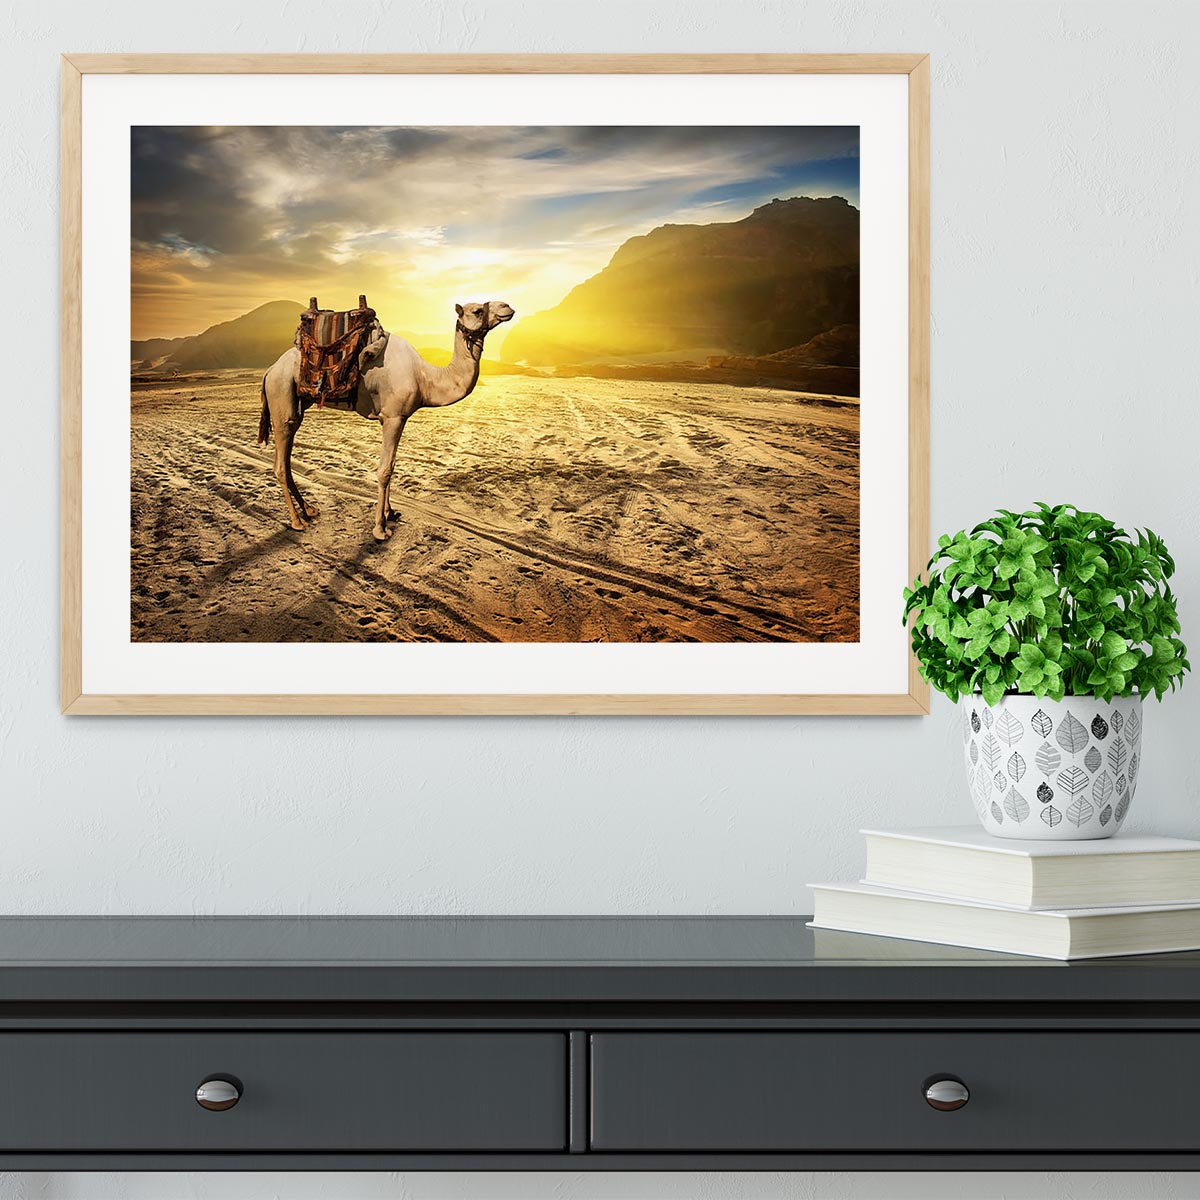 Camel in sandy desert near mountains at sunset Framed Print - Canvas Art Rocks - 3